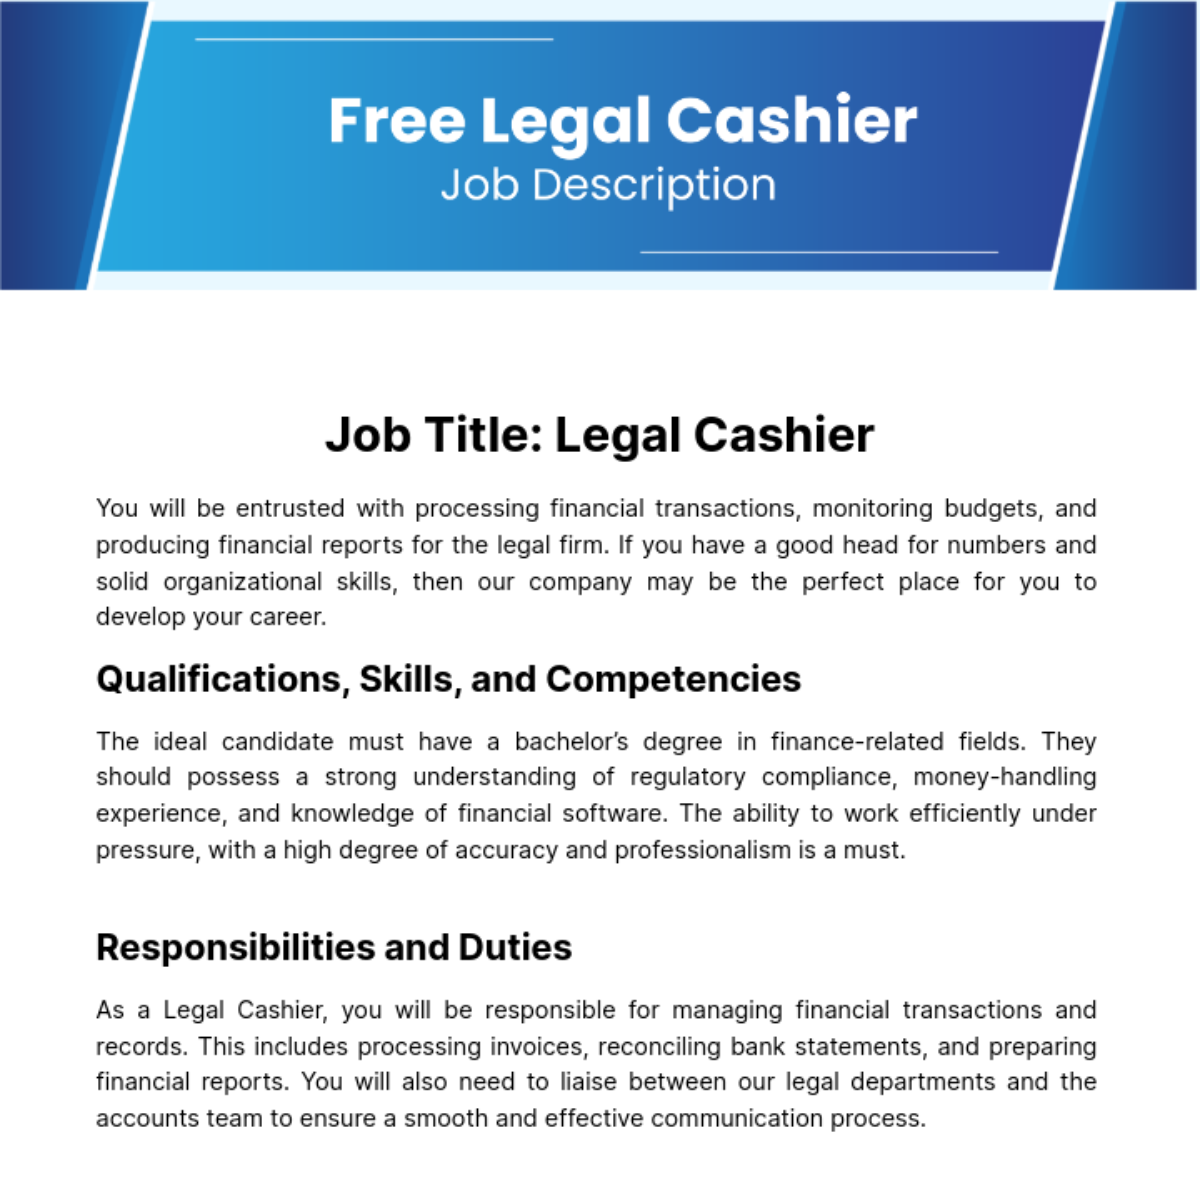 Legal Cashier Job Description Template